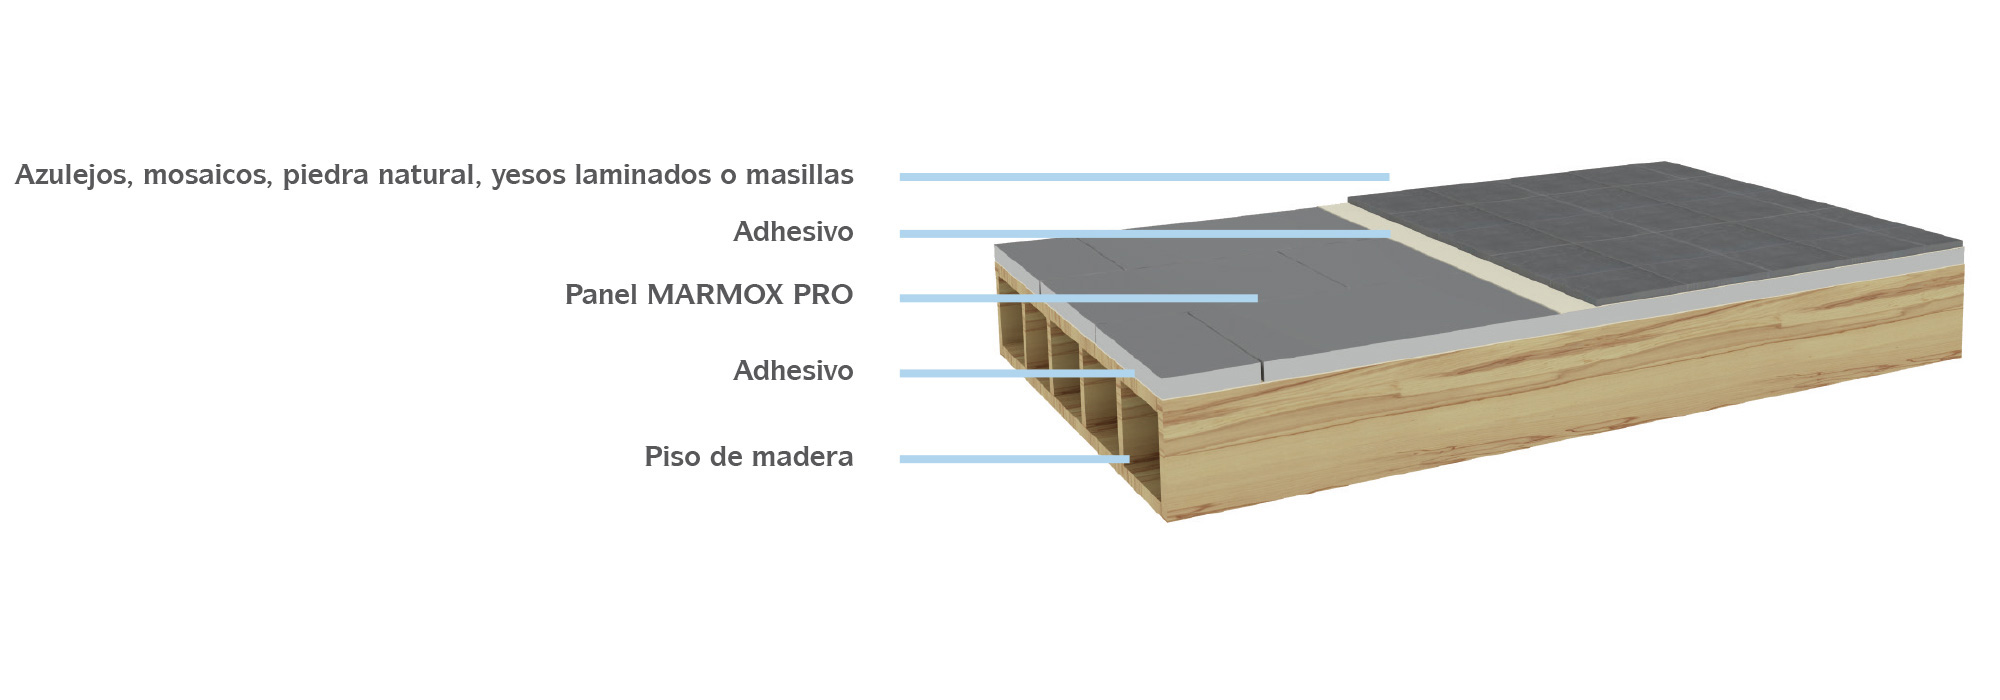 Instalación del Panel MARMOX PRO en suelos de madera